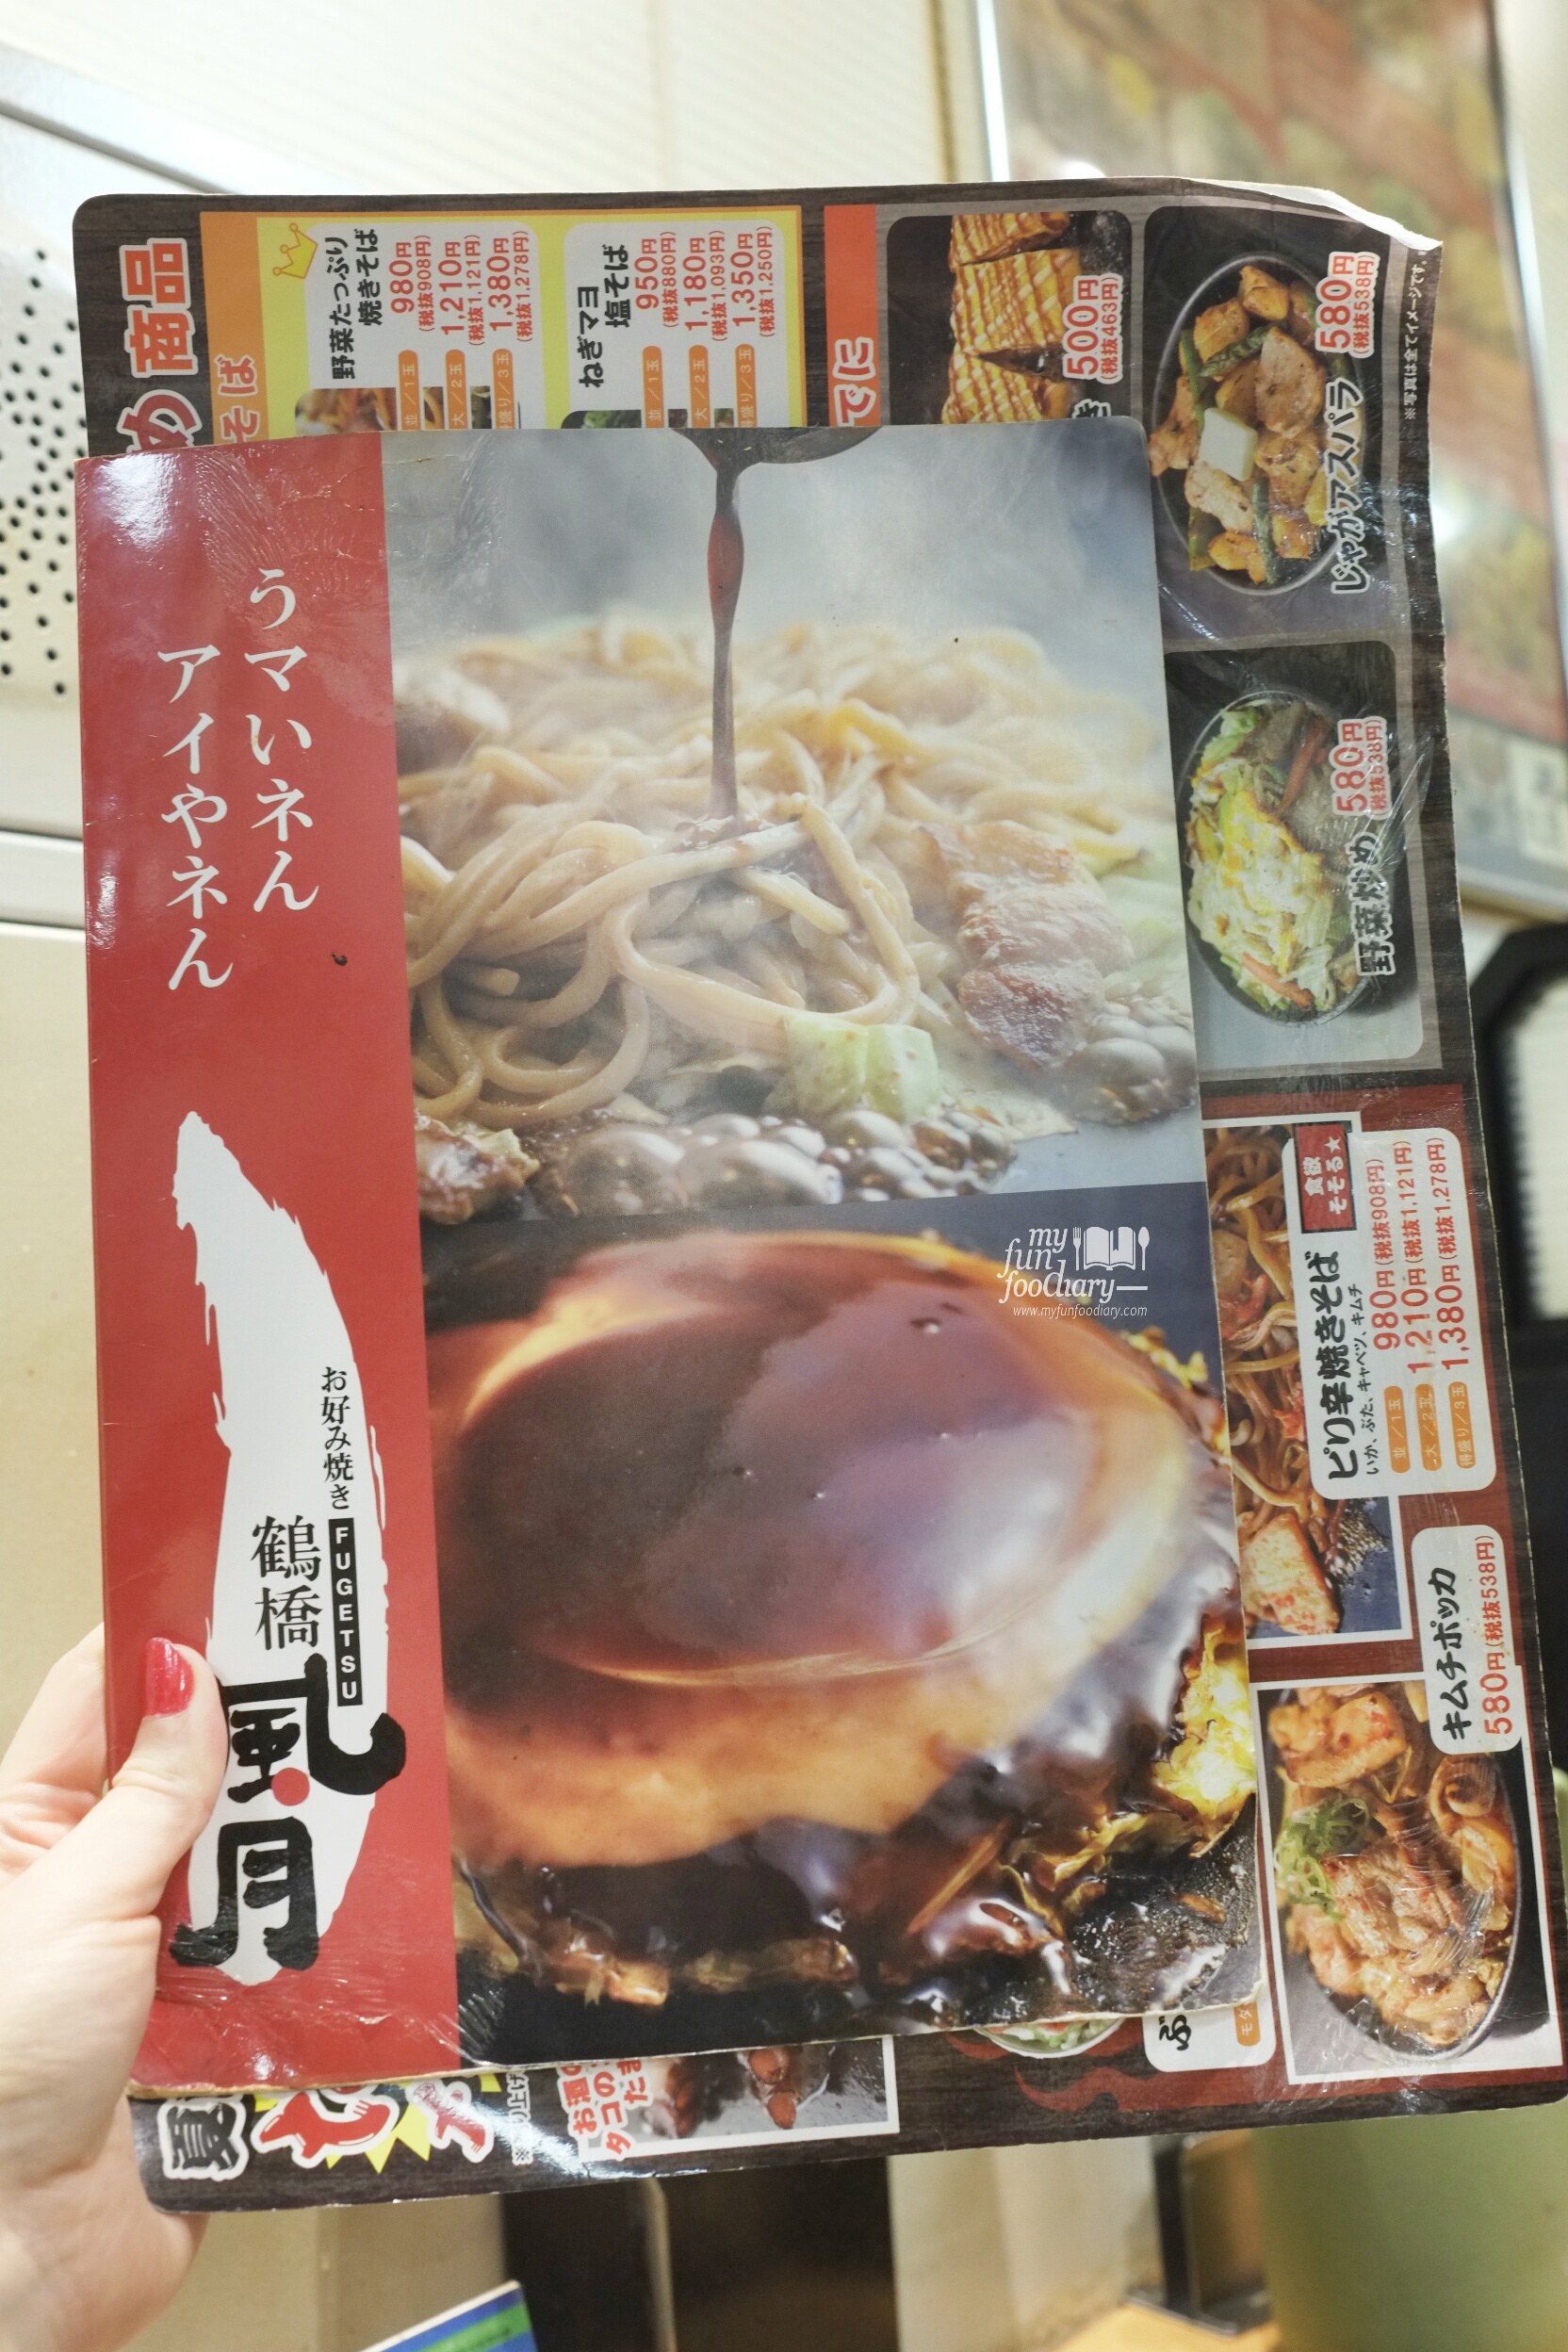 Signature Dish at Tsuruhashi Fugetsu Osaka Dotonbori by Myfunfoodiary